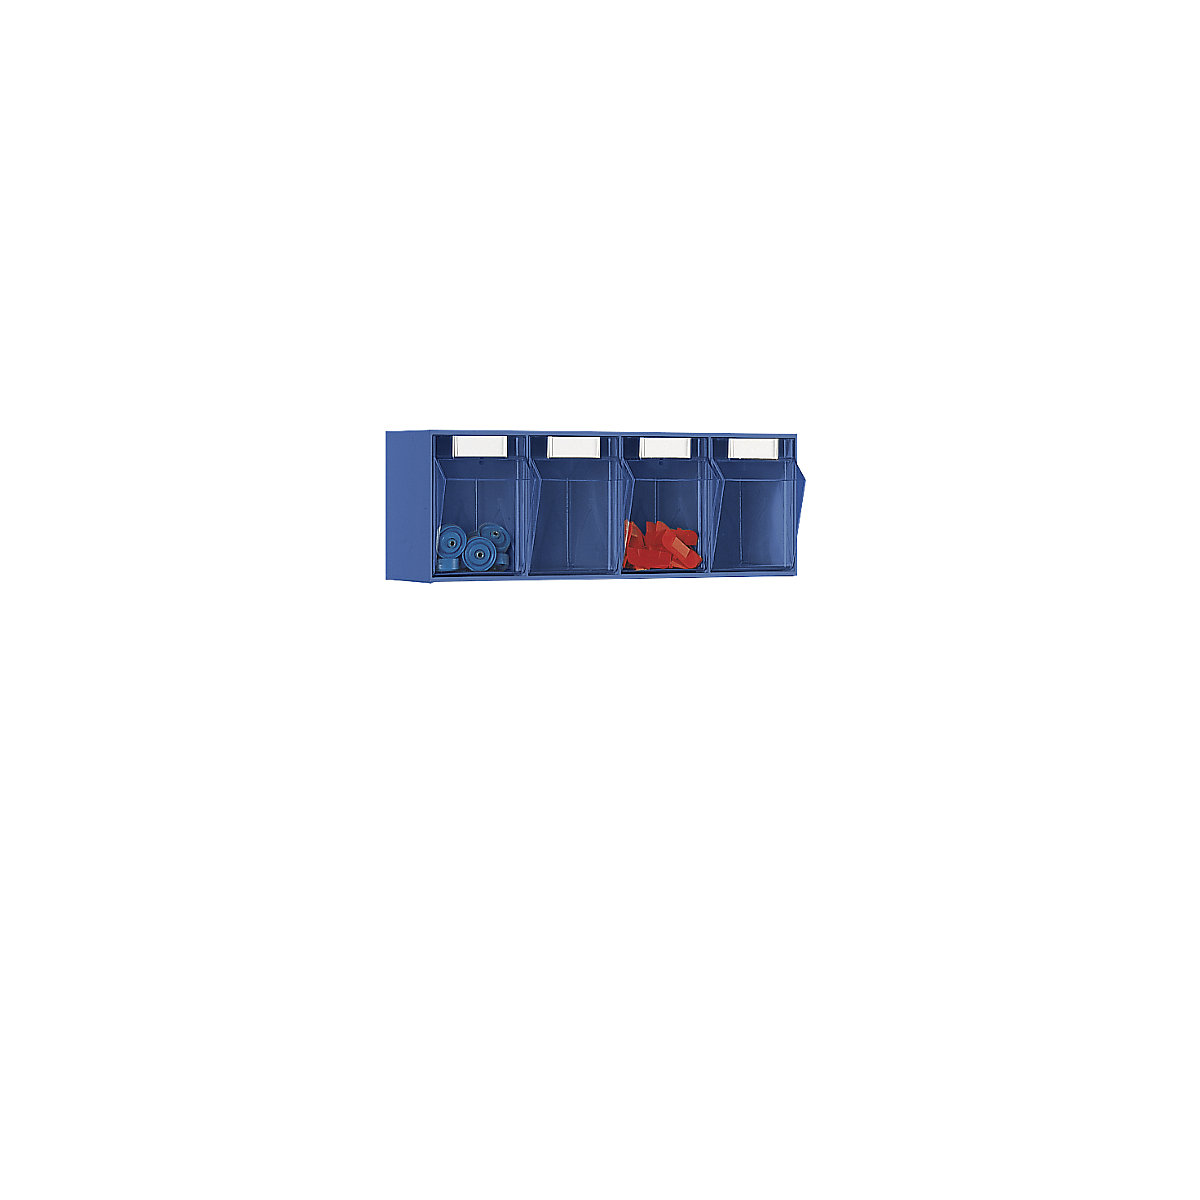 Klappkasten-System, Gehäuse-HxBxT 207 x 600 x 168 mm, 4 Kästen, blau-6